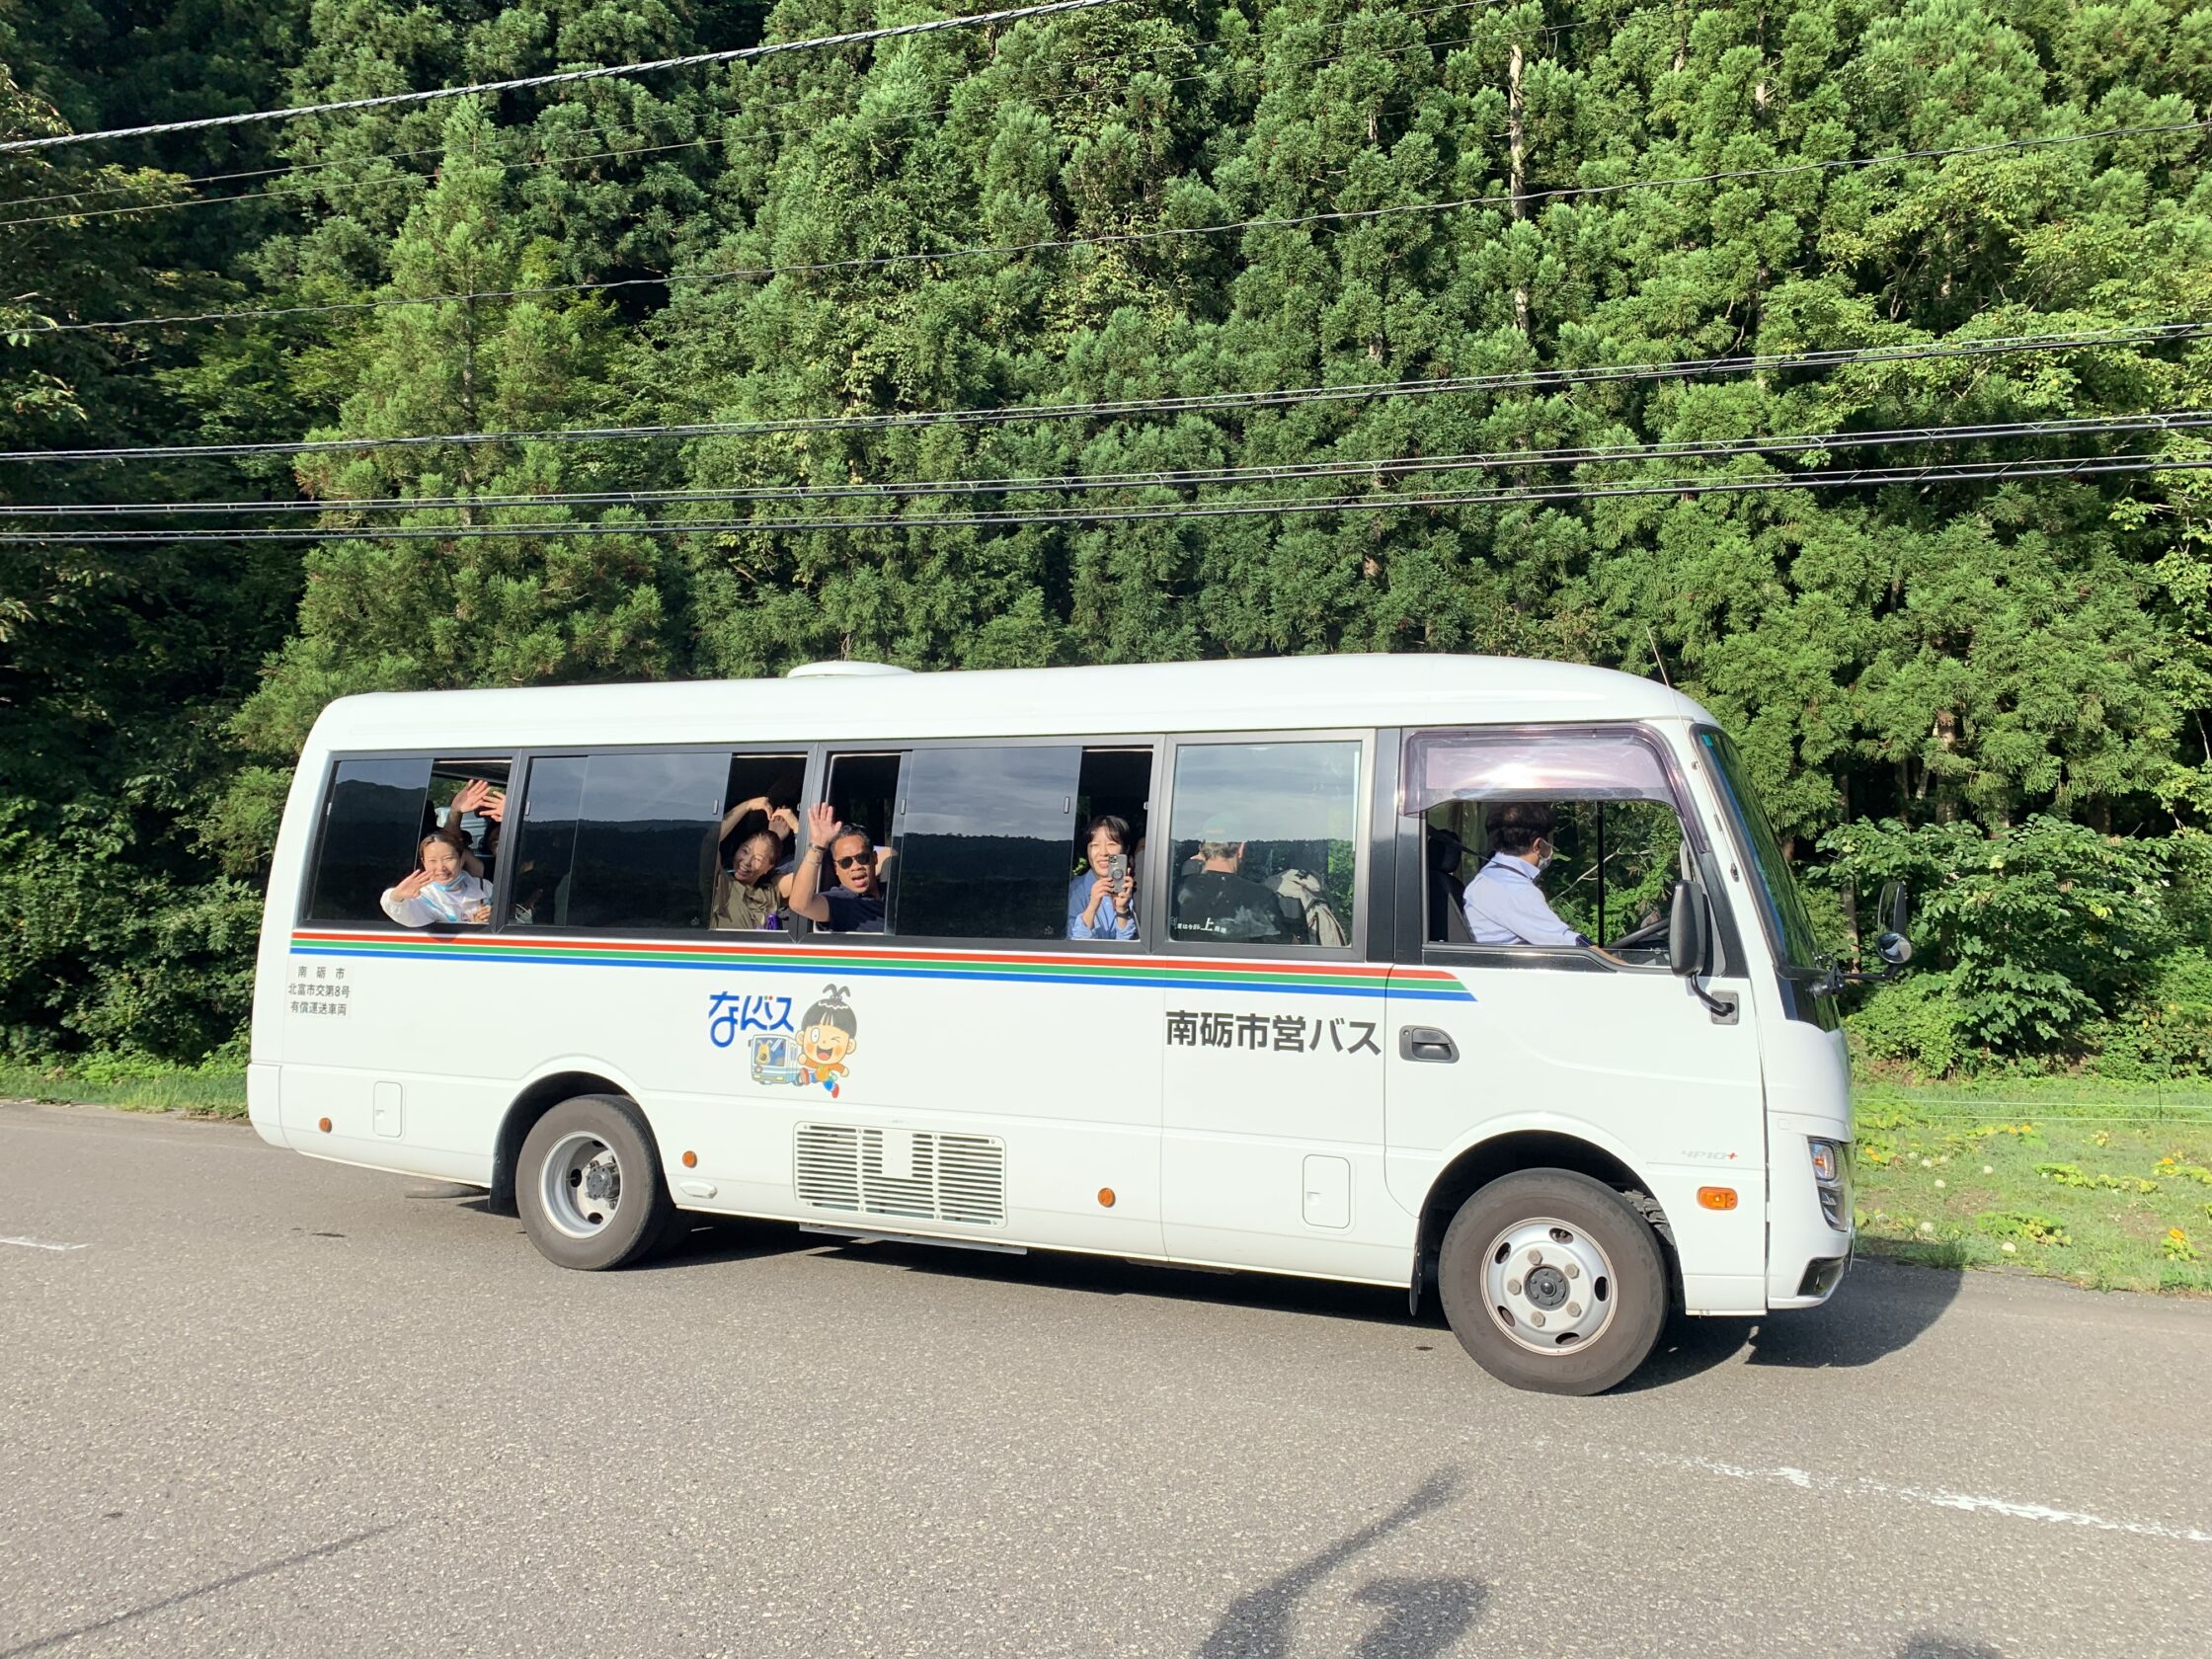 un piccolo autobus giapponese e ai finestrini persone affacciate a salutare